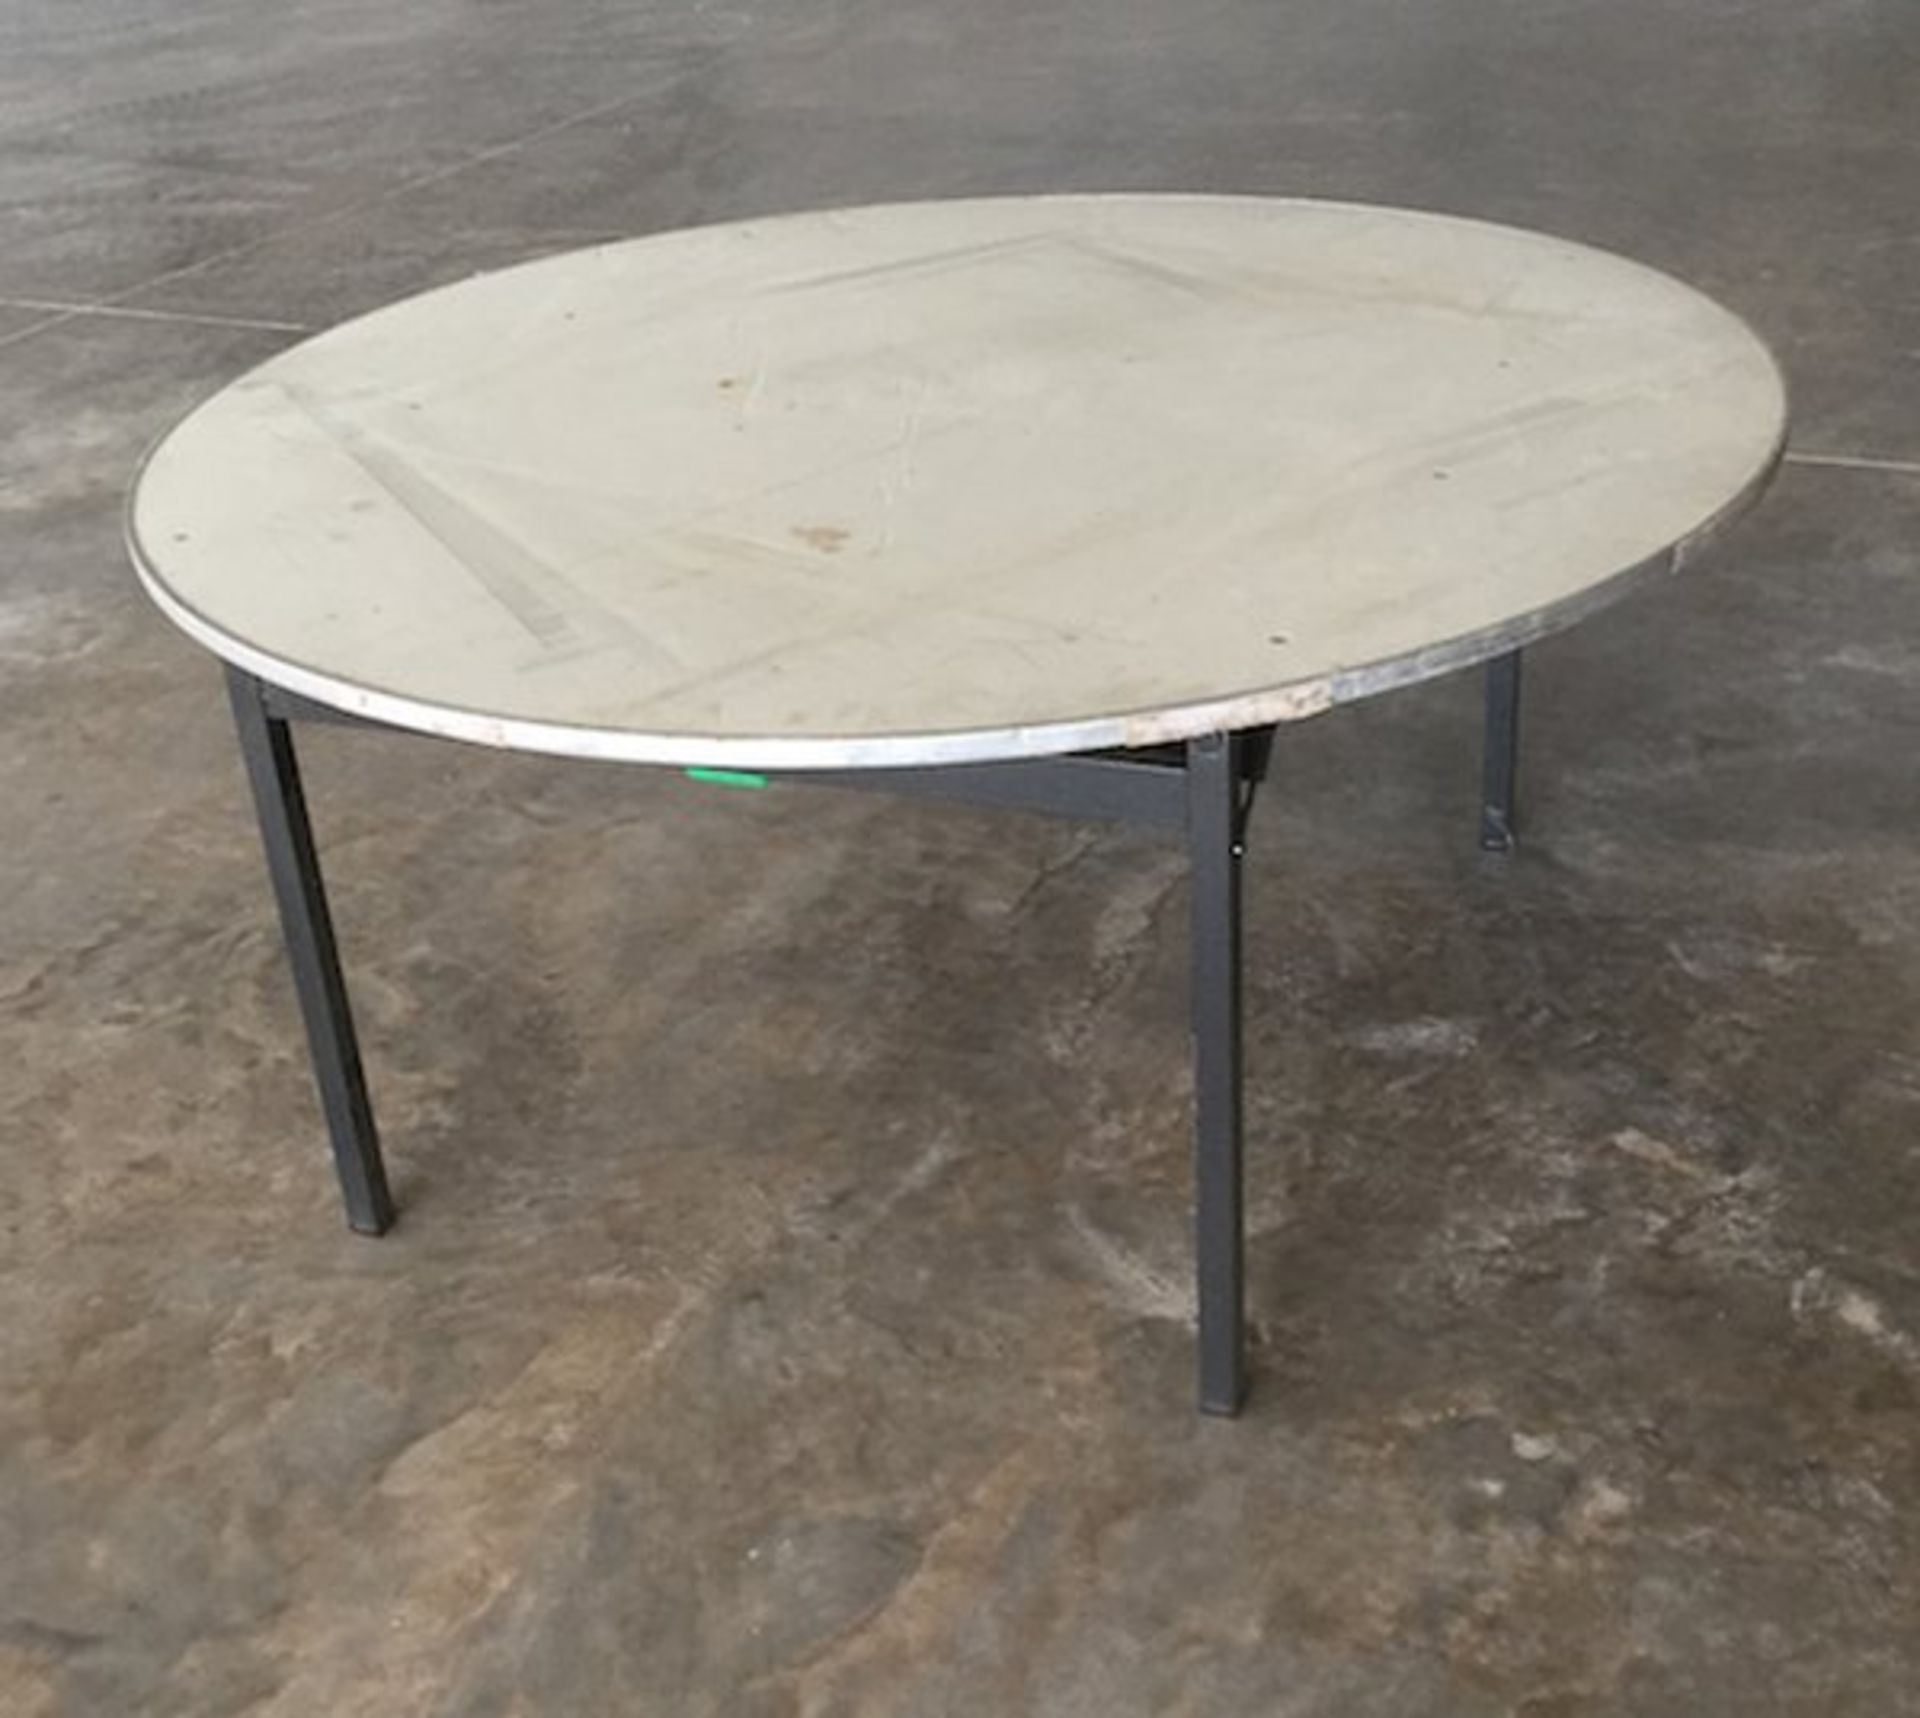 6 x 1500mm banquet trestle table velvet pad